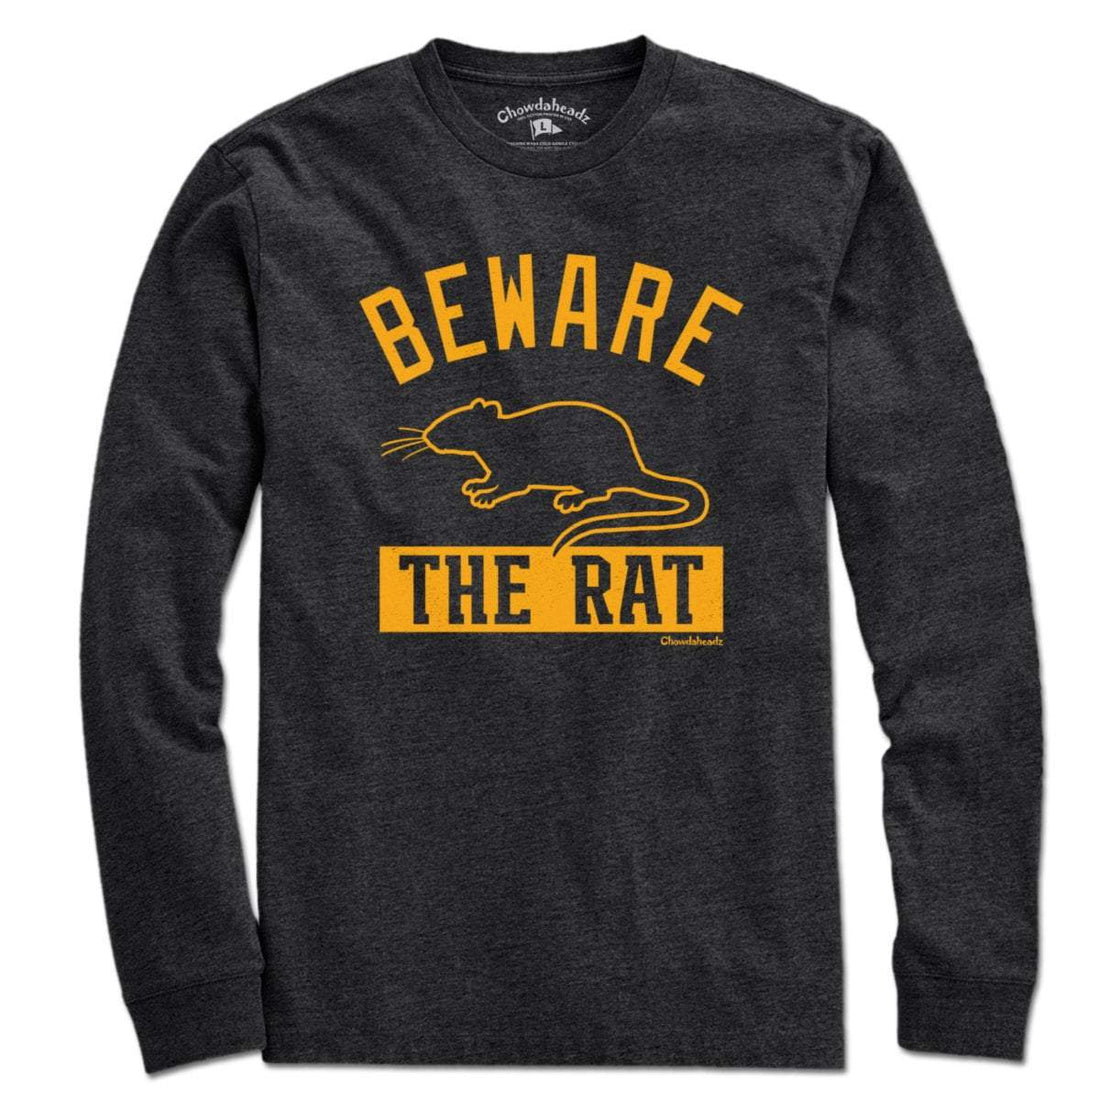 Beware The Rat Boston Hockey T-Shirt - Chowdaheadz